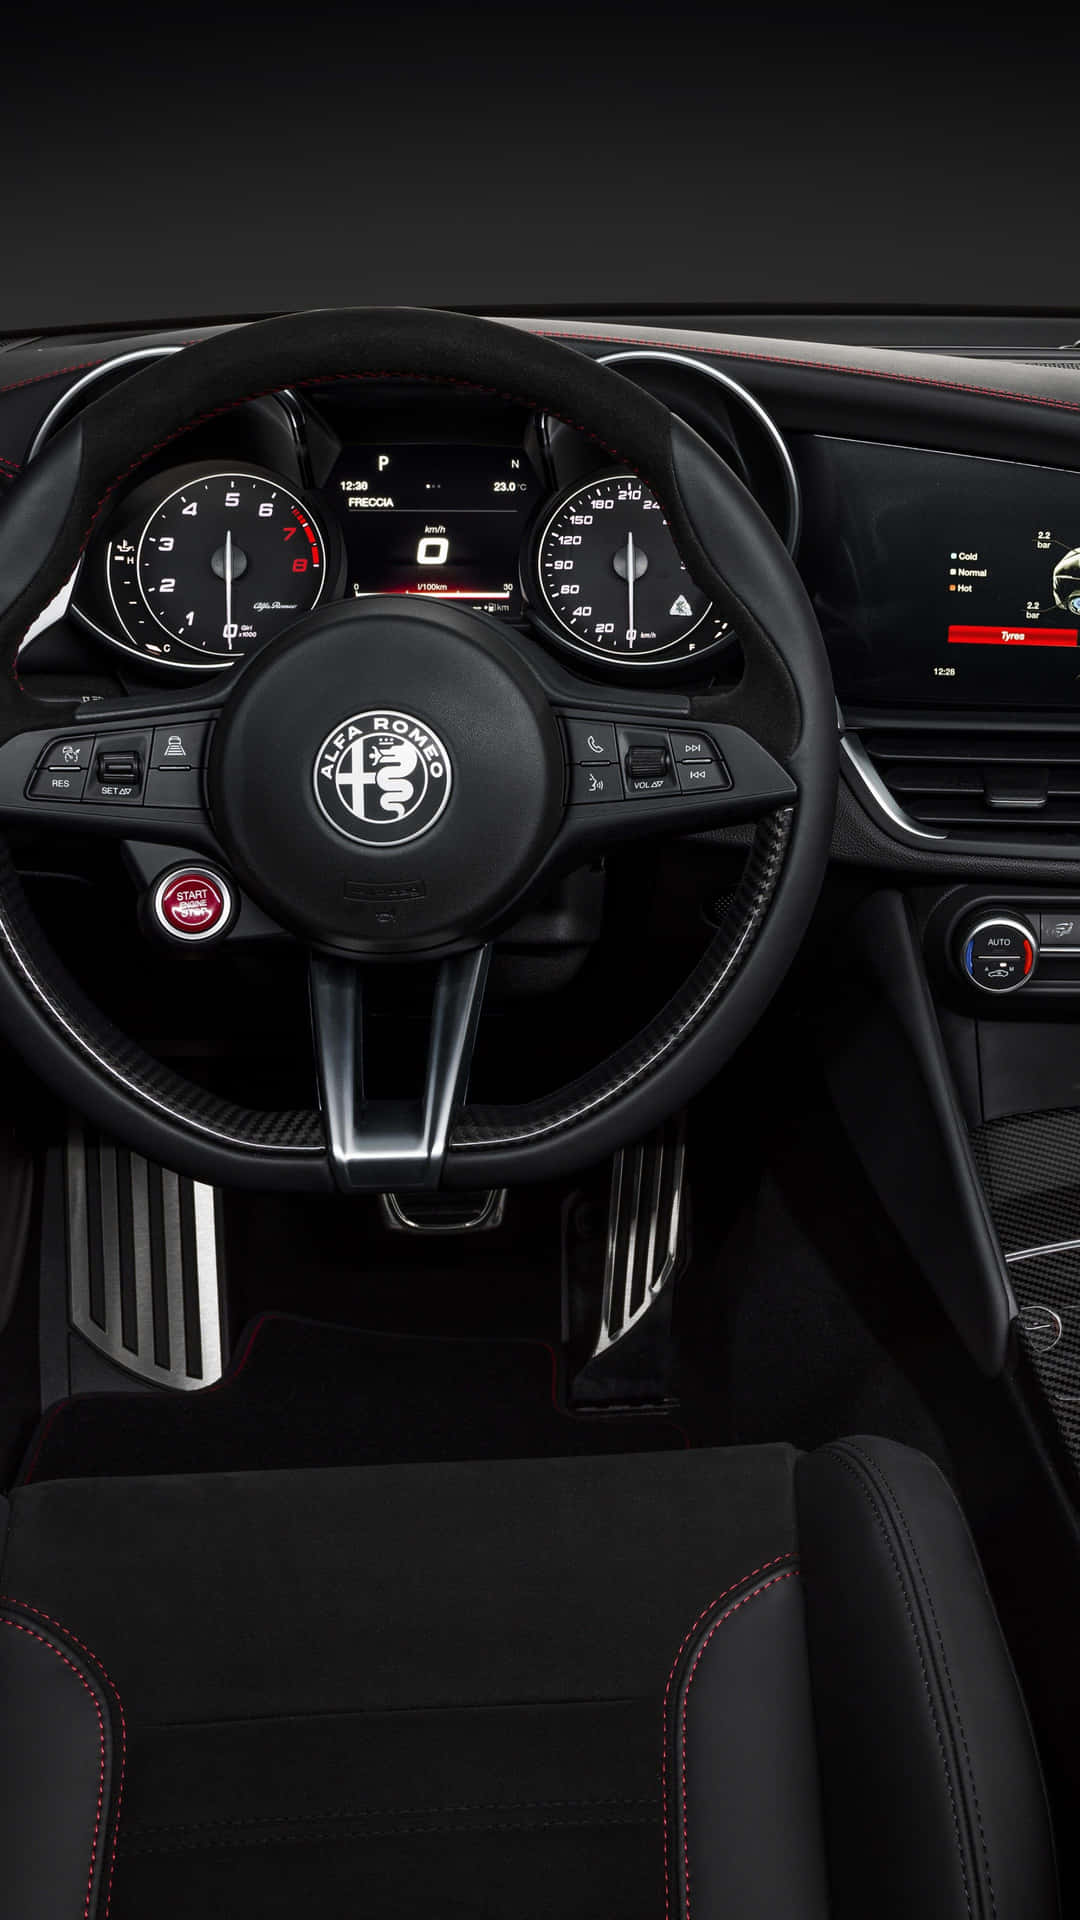 Kørseli En Alfa Romeo - En Affære Med Teknologi Og Ren Fornøjelse.